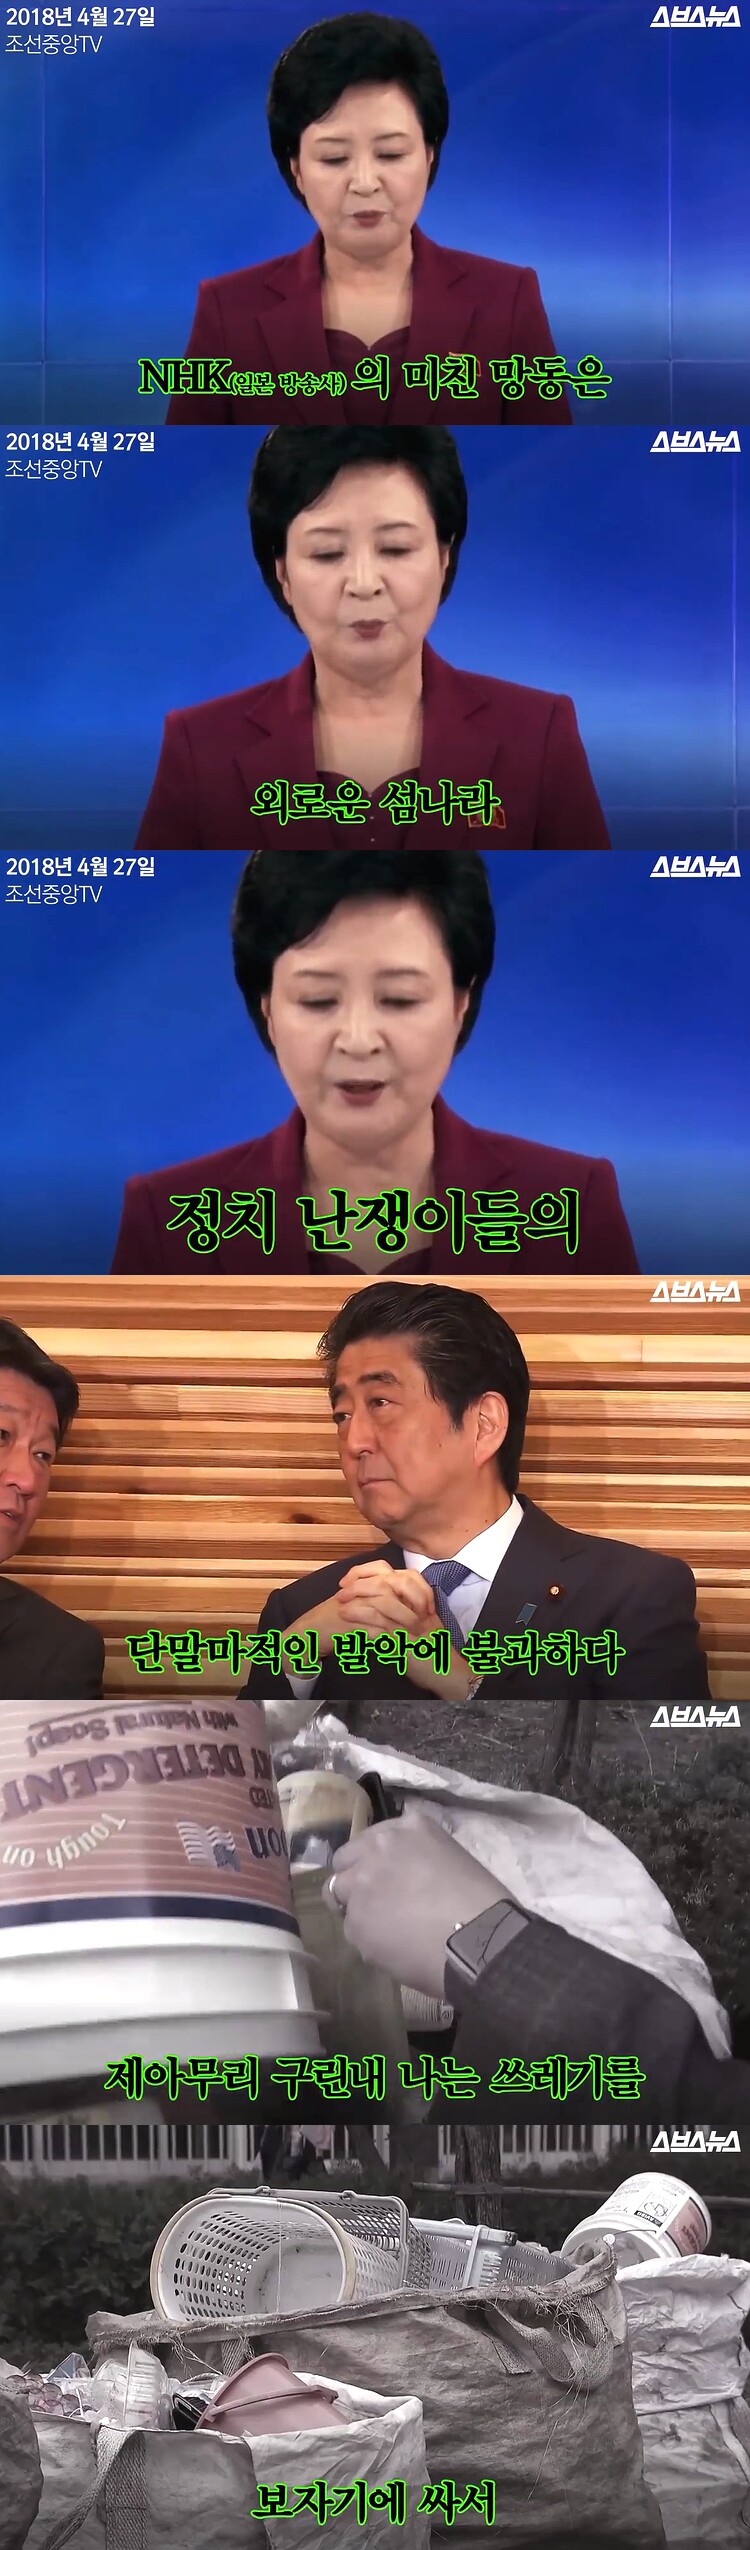 대한민국 분노통역사